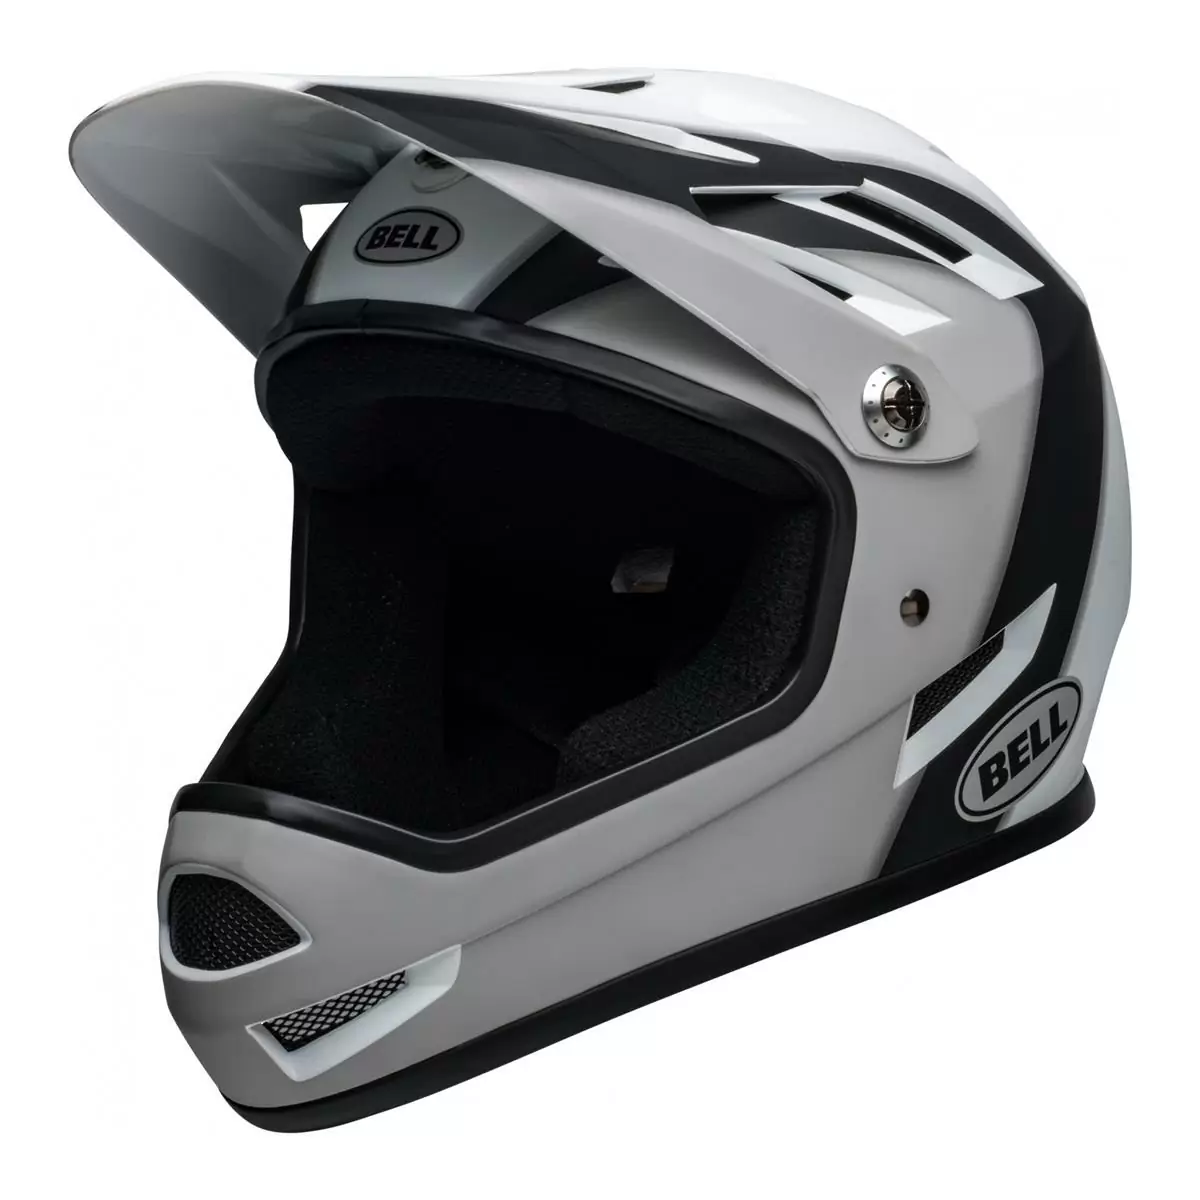 Sanction Full Face Helmet Black/White Size L (58-60cm) - image